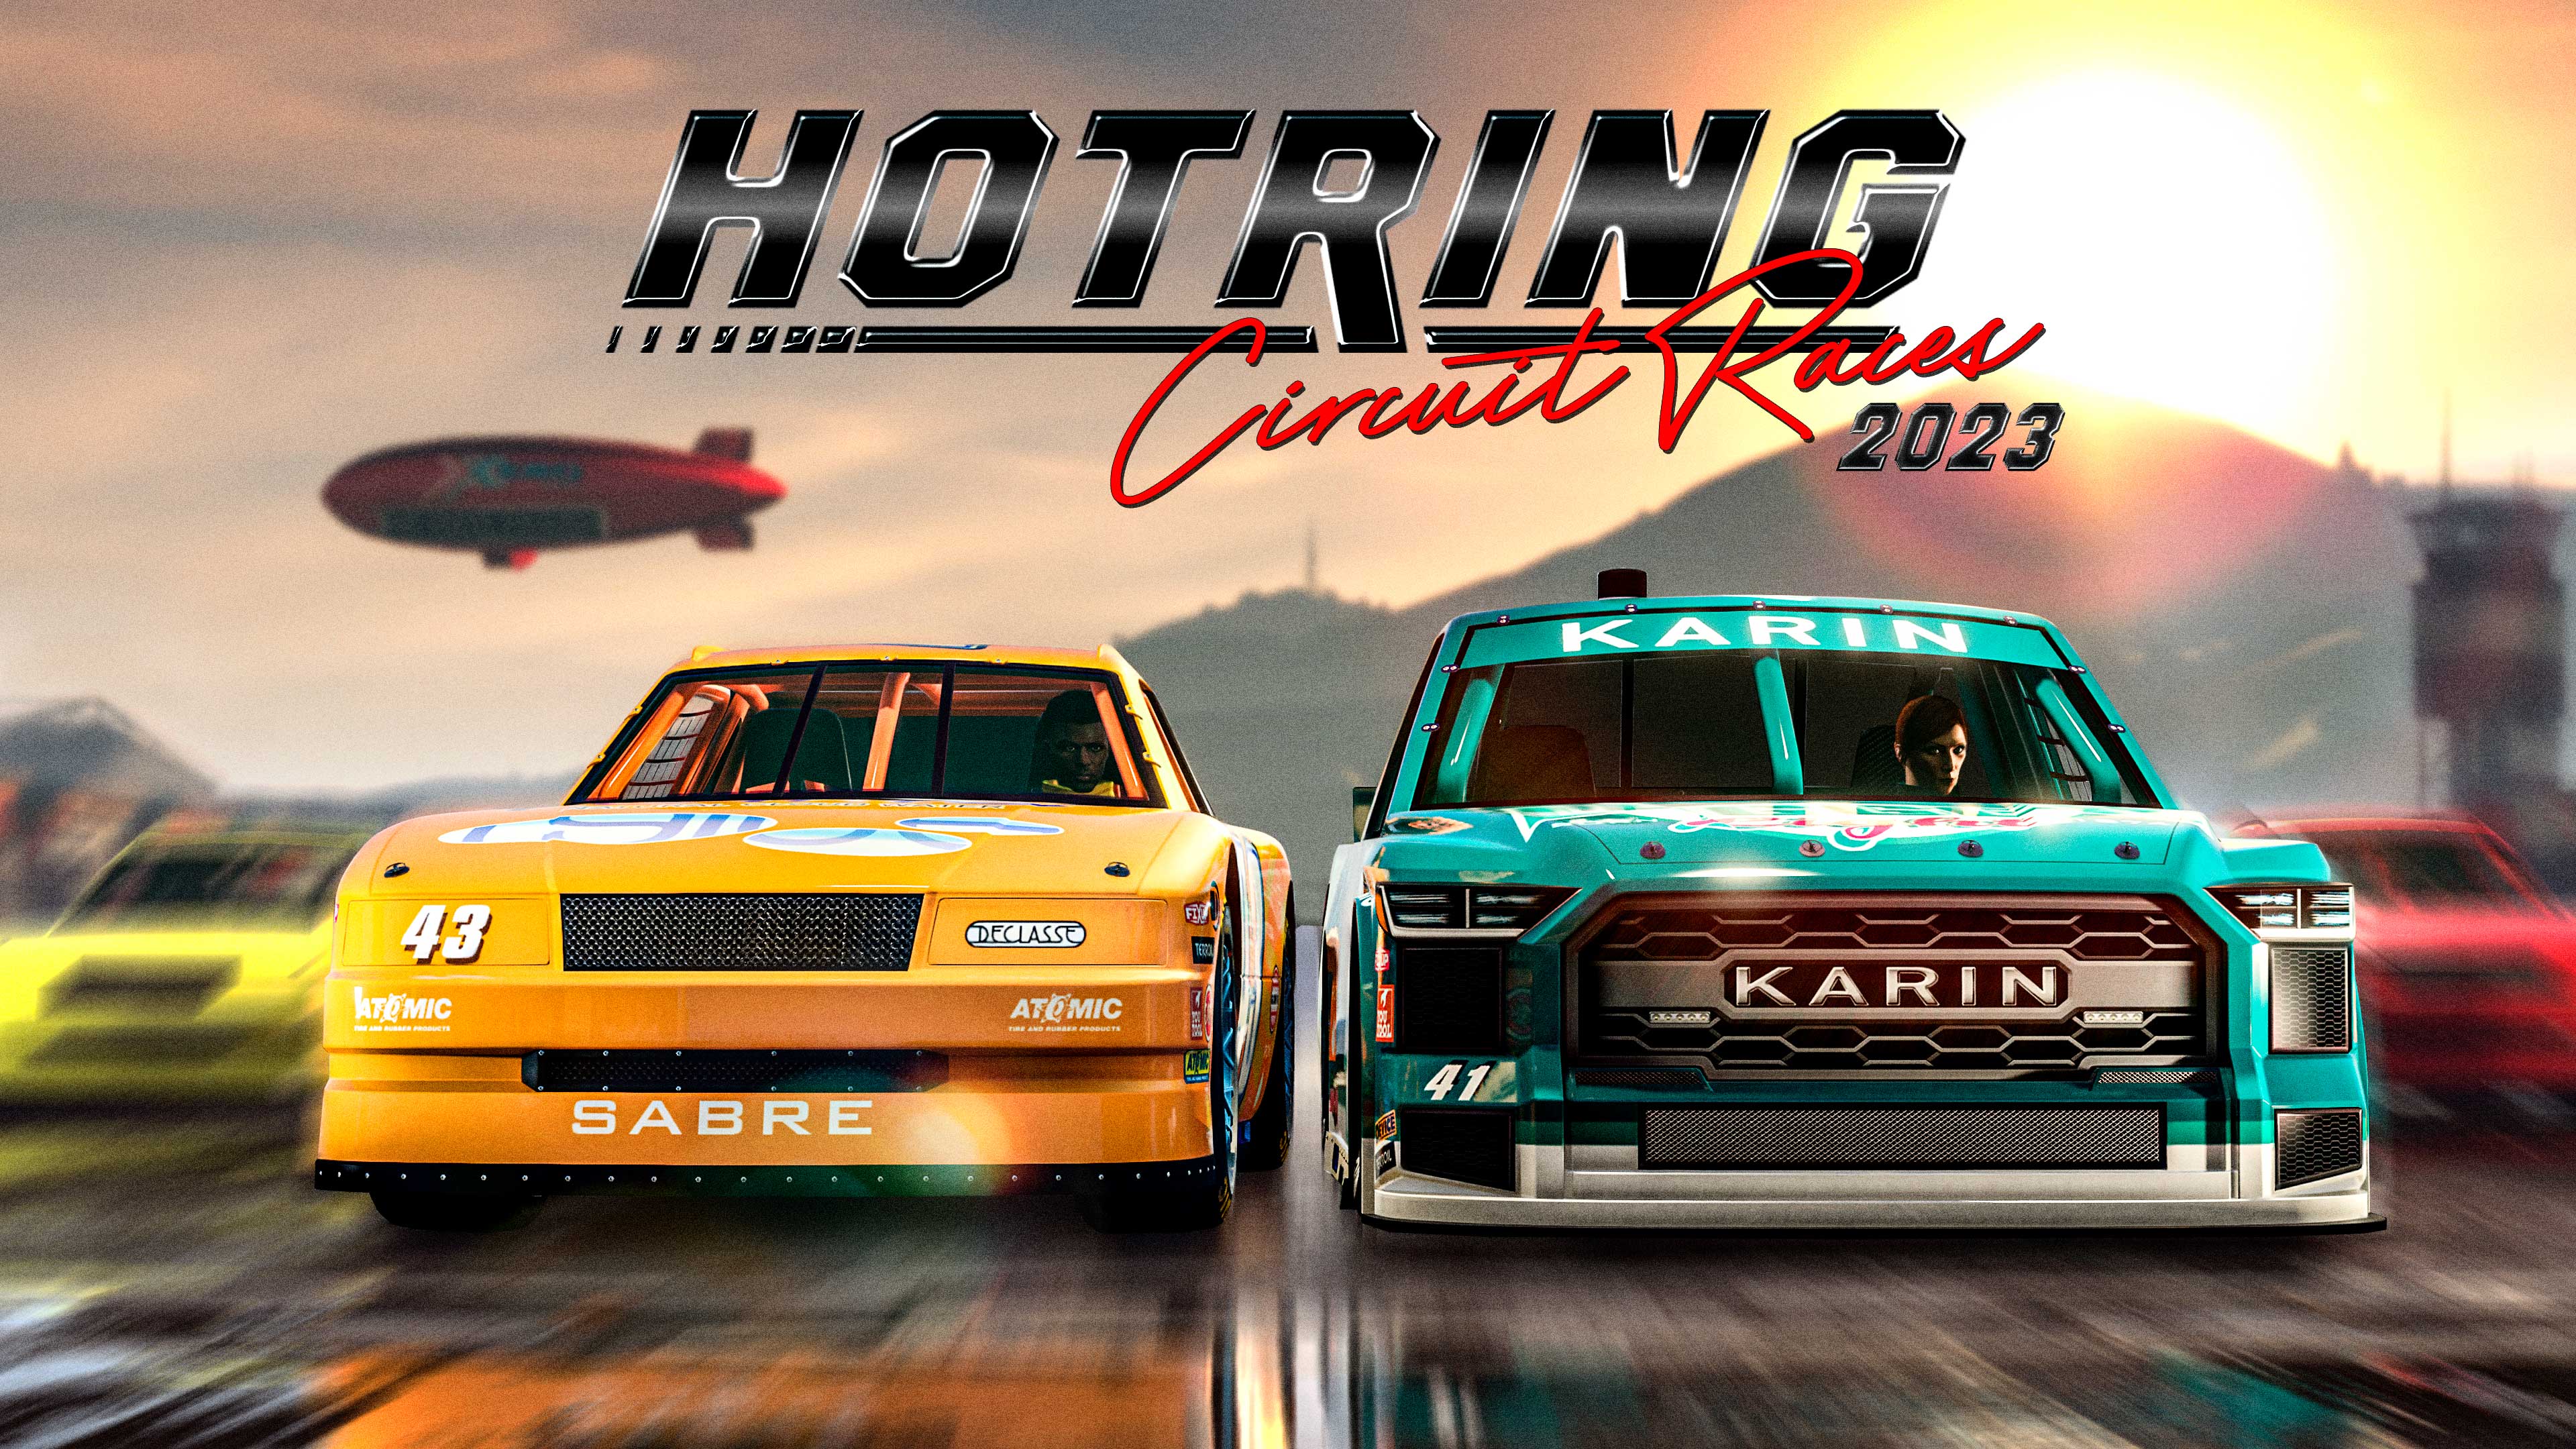 Immagine di gioco e logo della serie Hotring